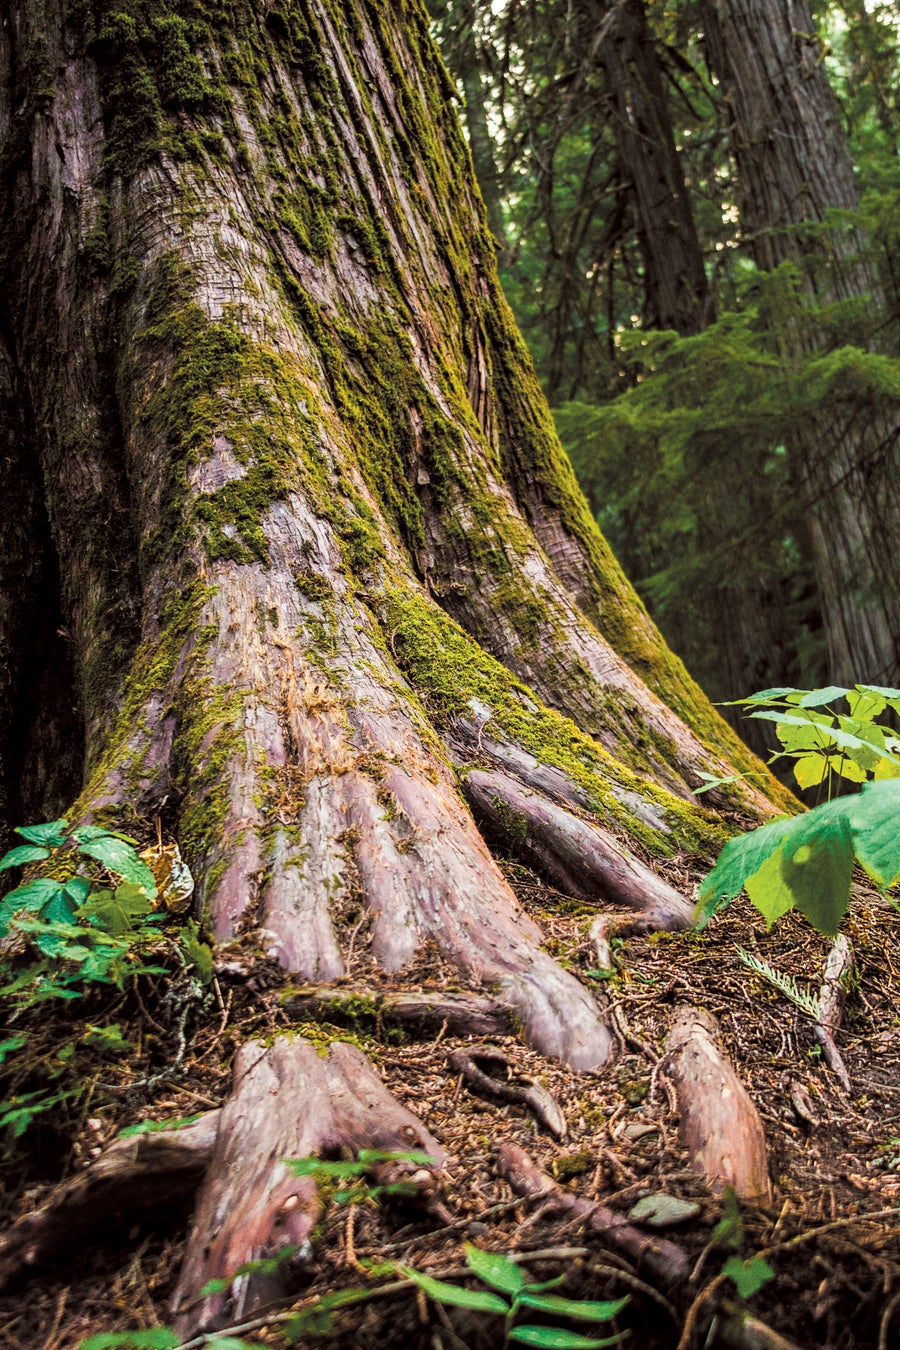 A giant cedar binds the forest floor.